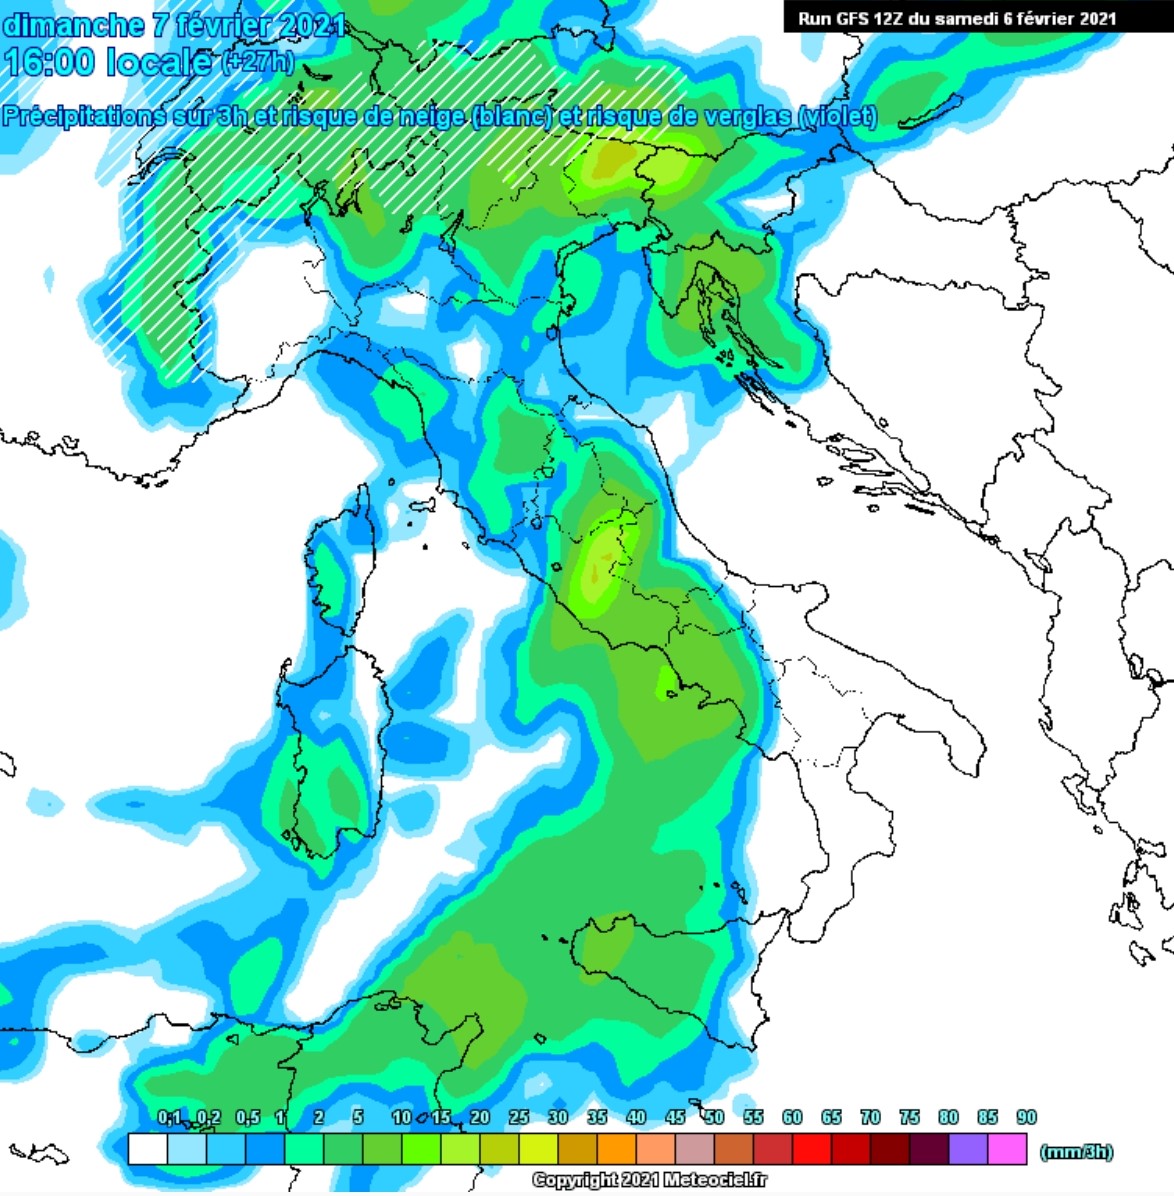 Previsioni meteo in Abruzzo dal 7 al 14 Febbraio 2021